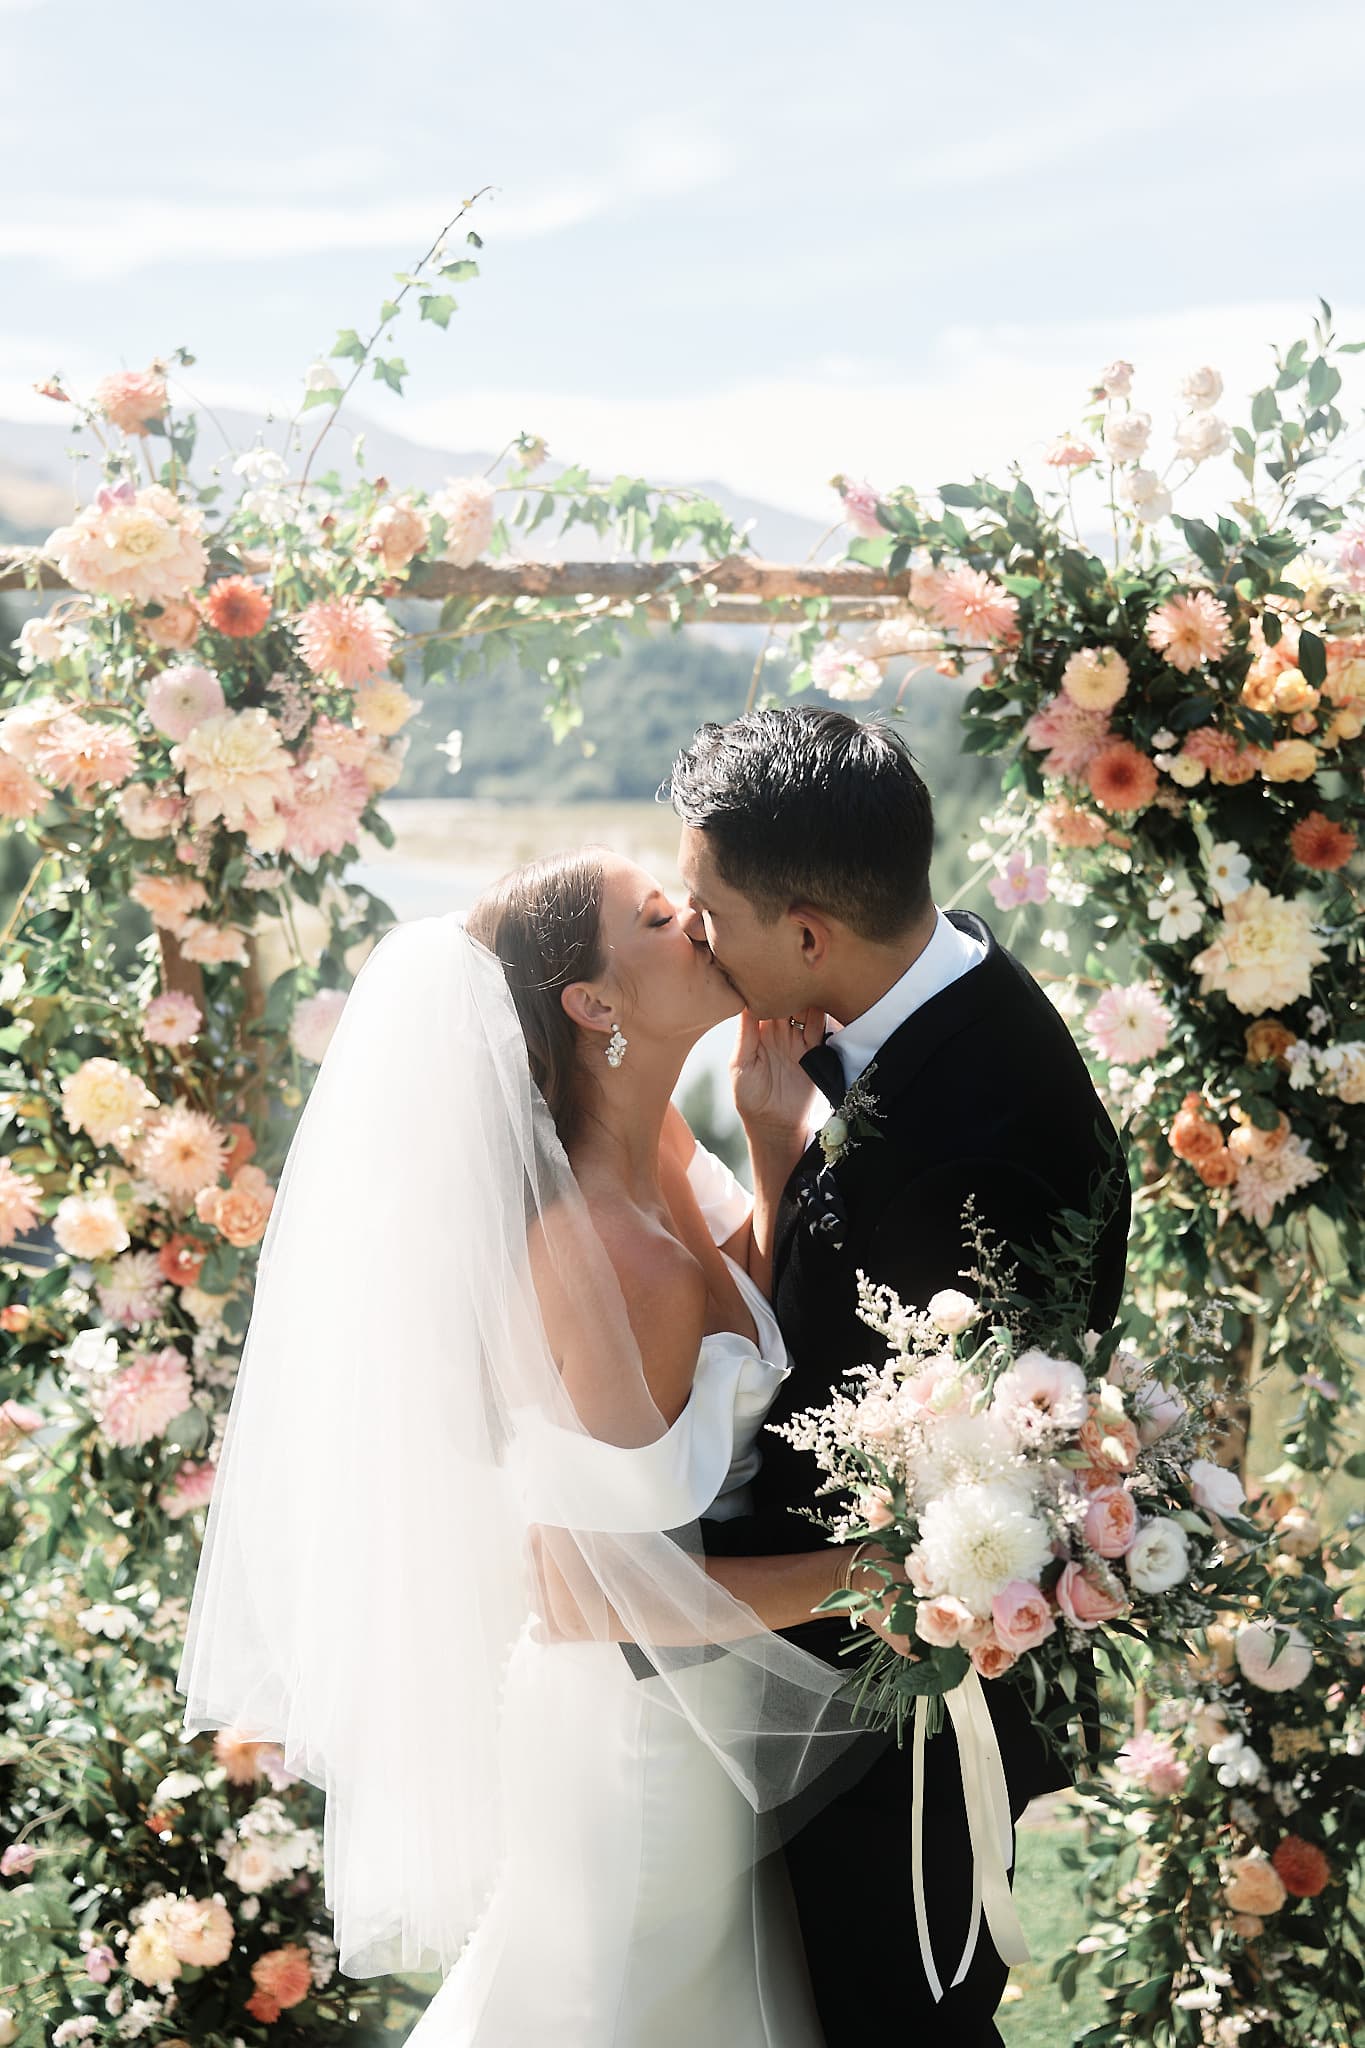 クイーンズタウン　ニュージーランド　ウェディング　前撮り　挙式　結婚式　フォトグラファー | クイーンズタウンのヘリウェディングで、花のアーチの下でキスをする新郎新婦。